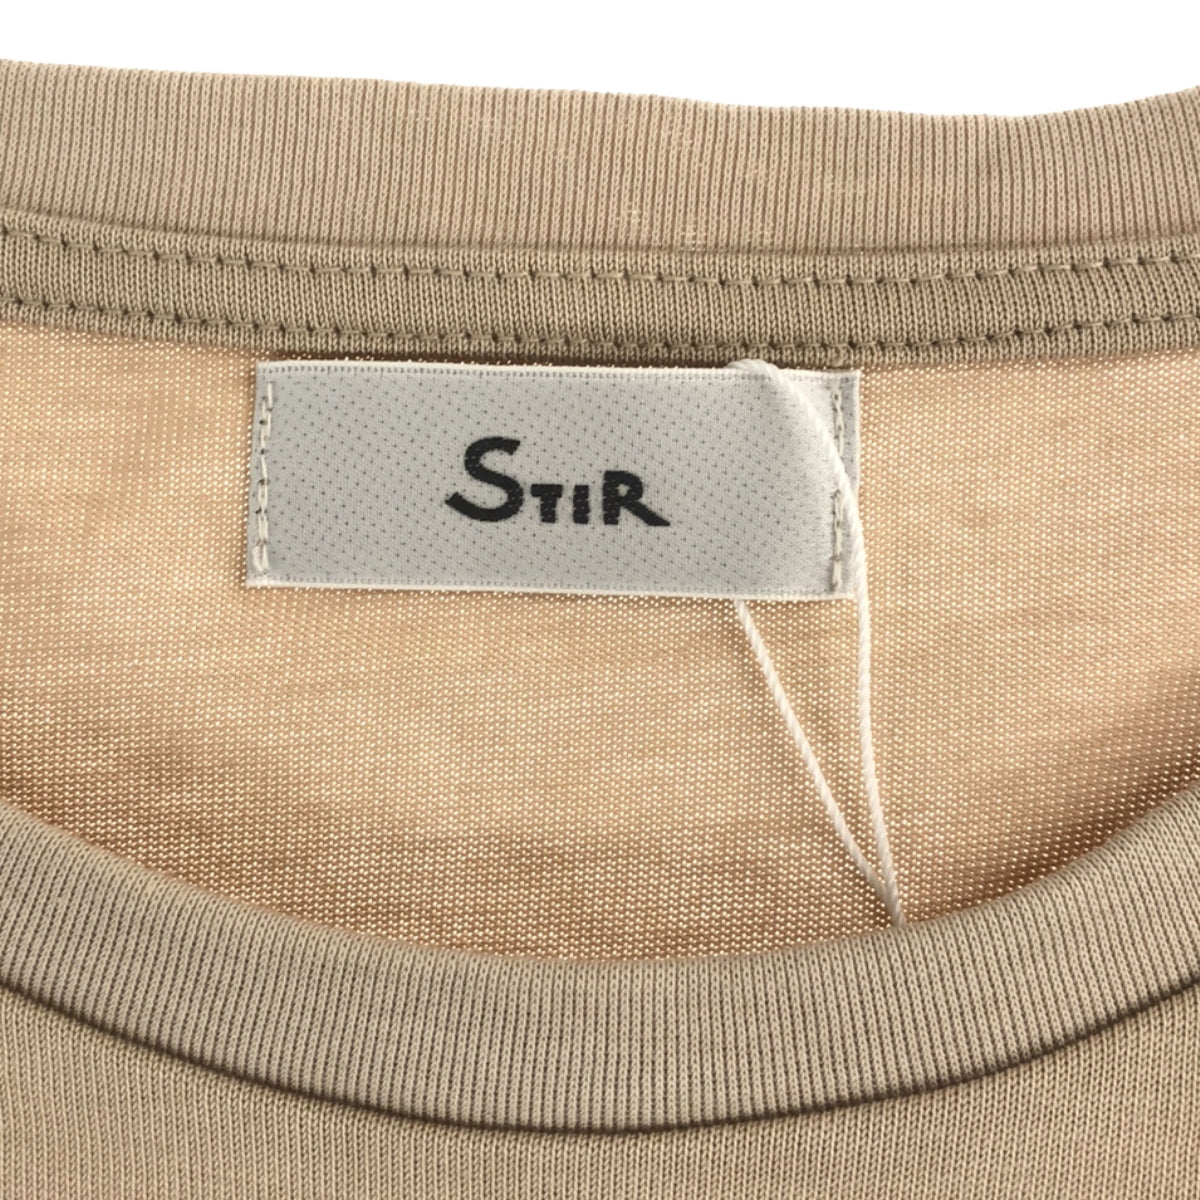 STIR / スティア | オーセンティックドレスTシャツ | 4 | メンズ